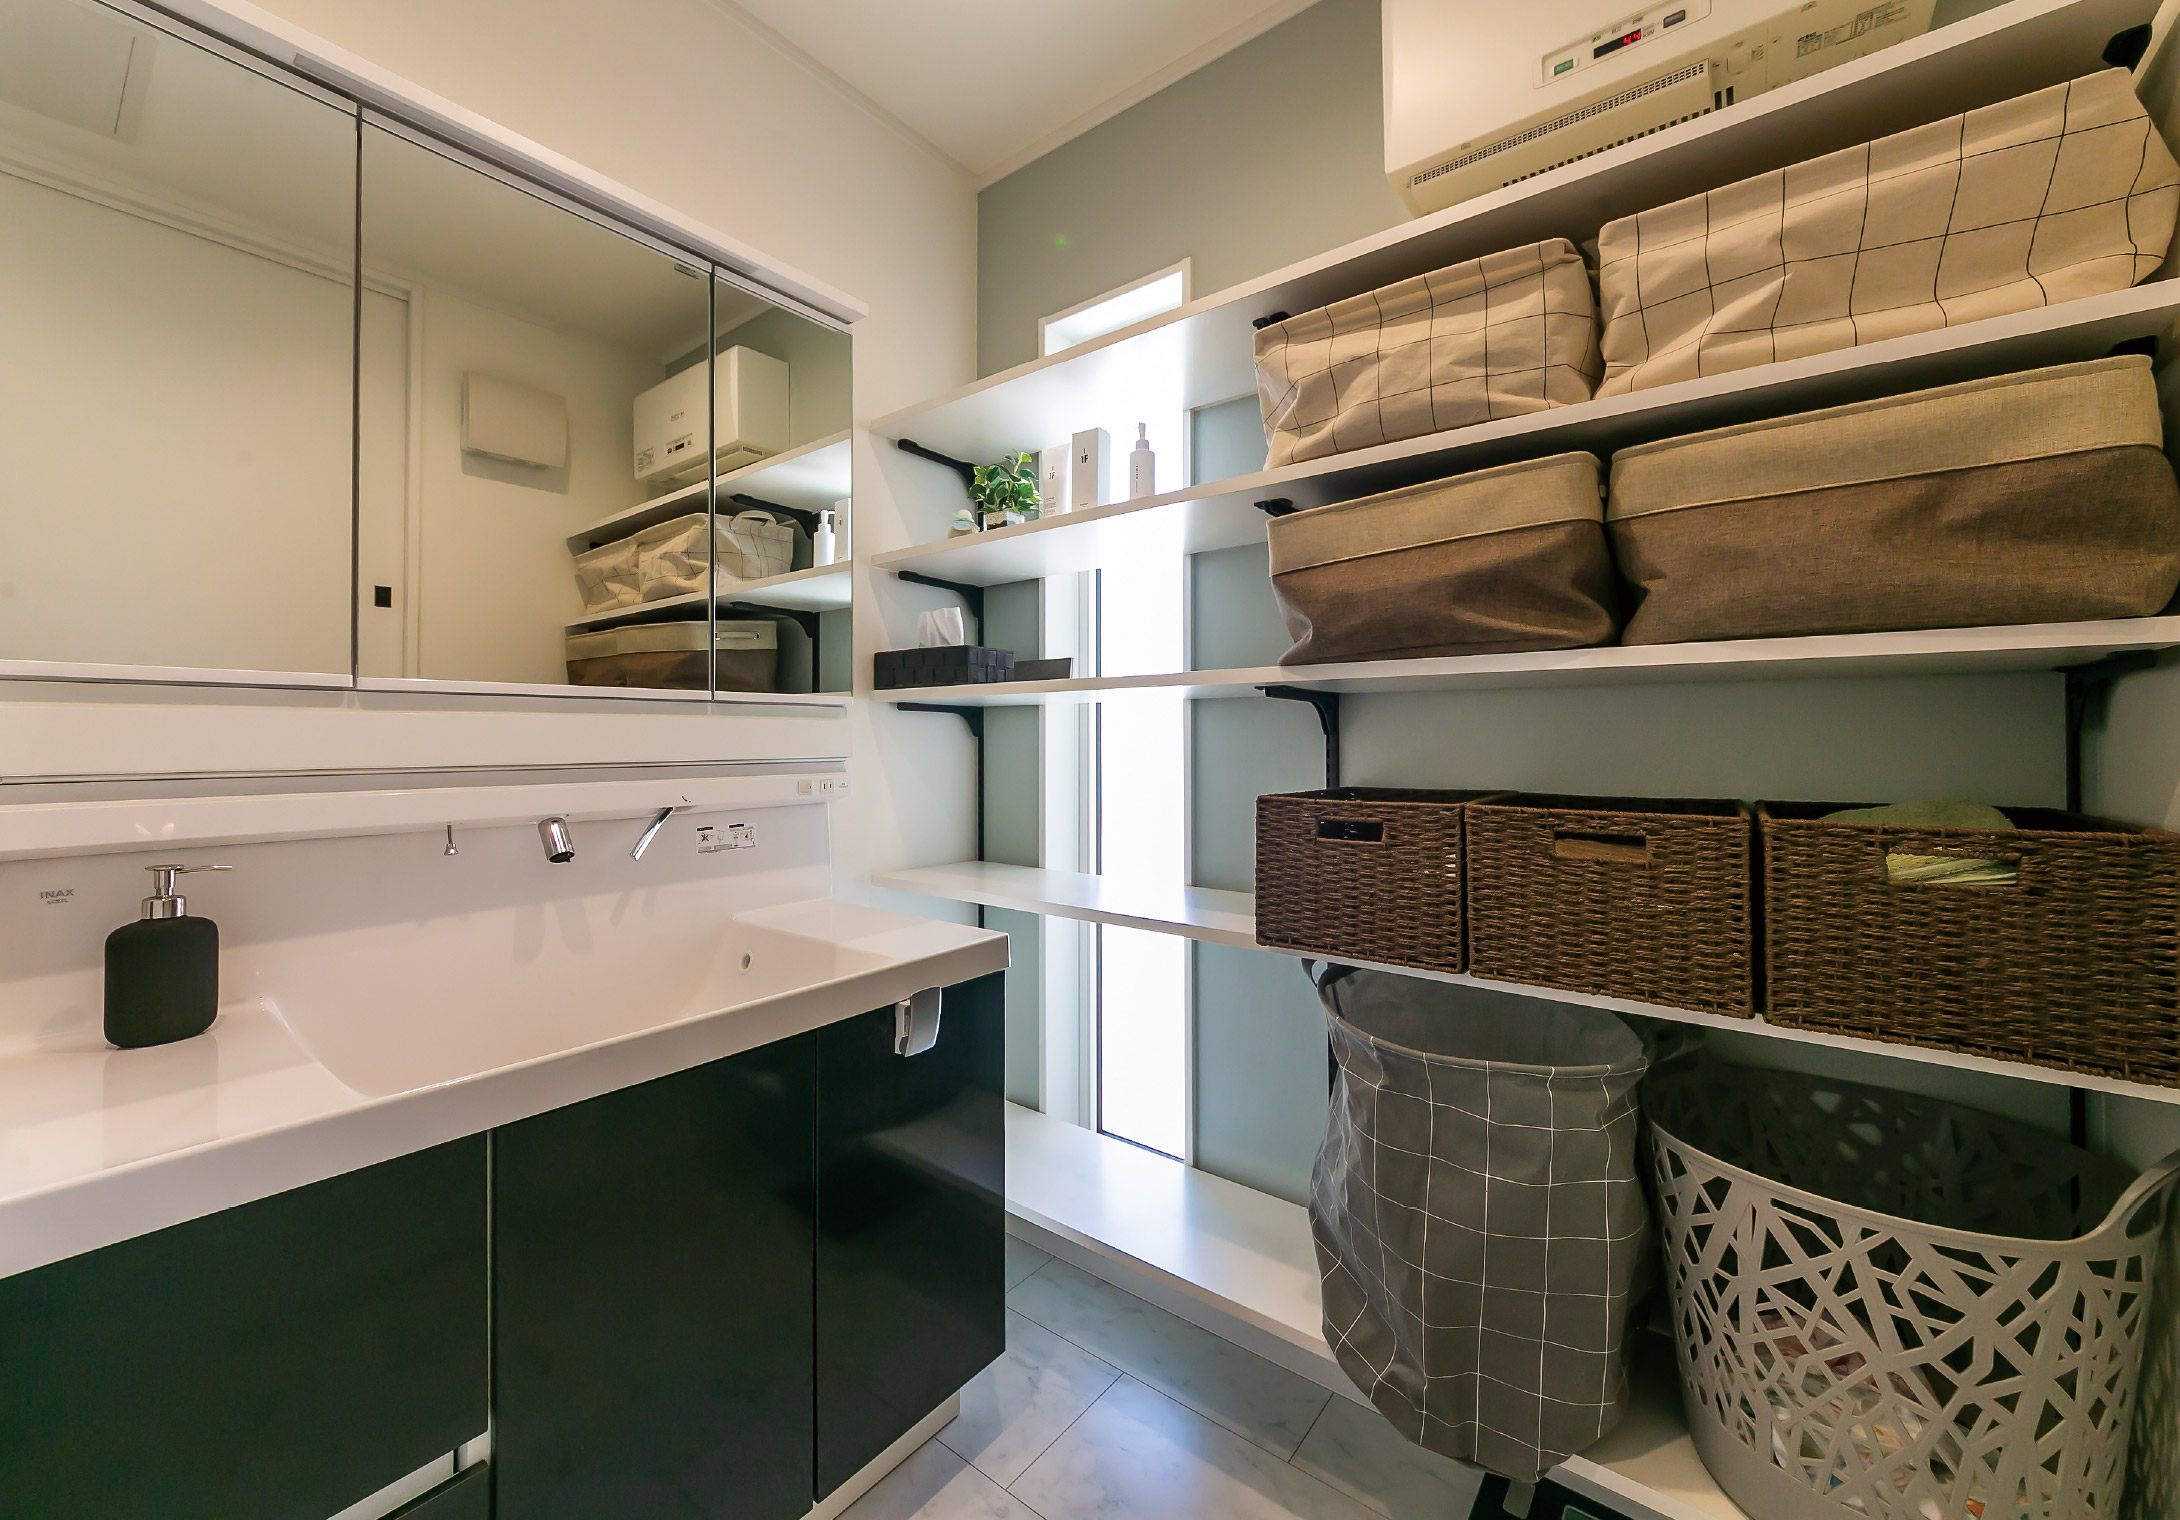 ワイドな洗面化粧台を設置した洗面室。タオル類などの収納スペースも豊富に設けられている。